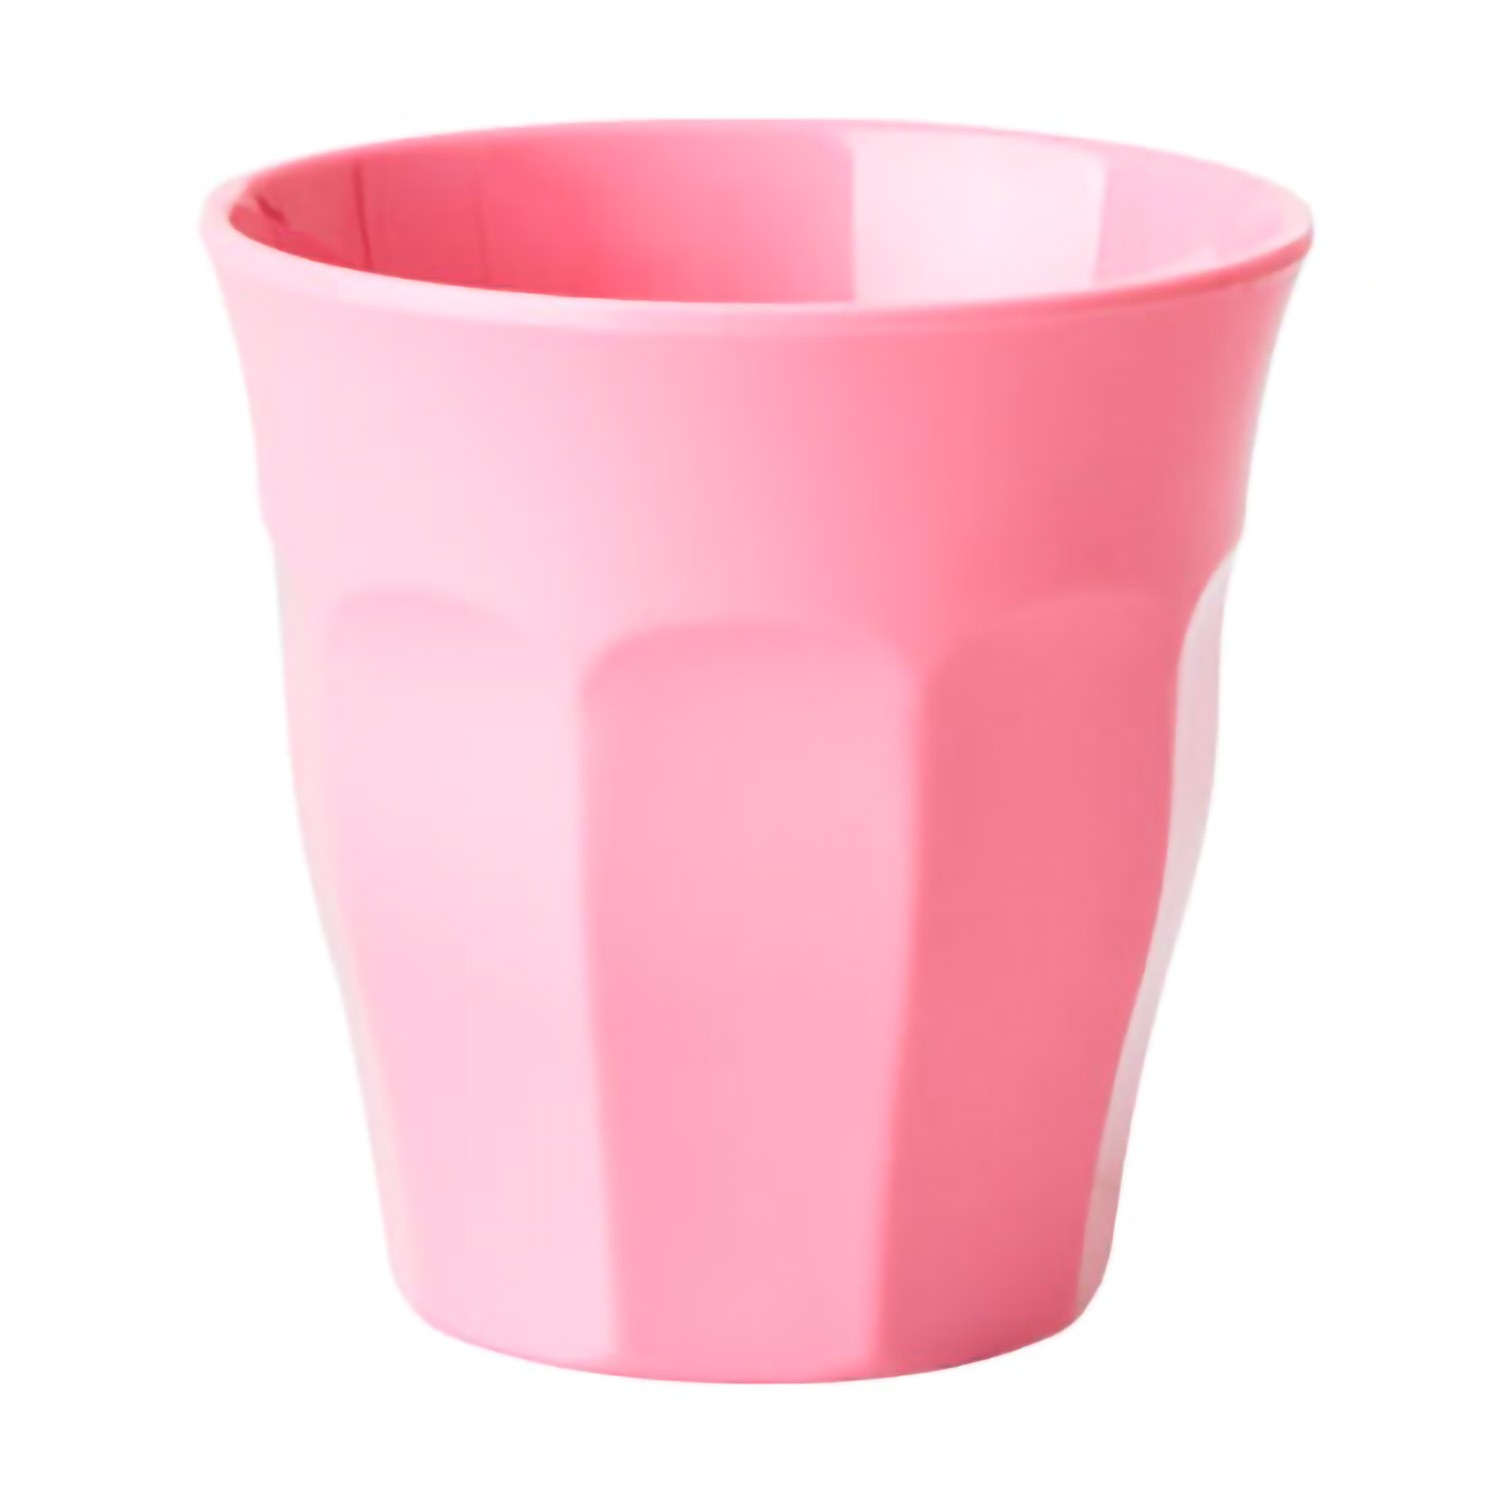 Colori: Rosa Set di 6 Bicchieri in melamina Rice Shades of Pink Misura Piccola Rosa e Frutti di Bosco 